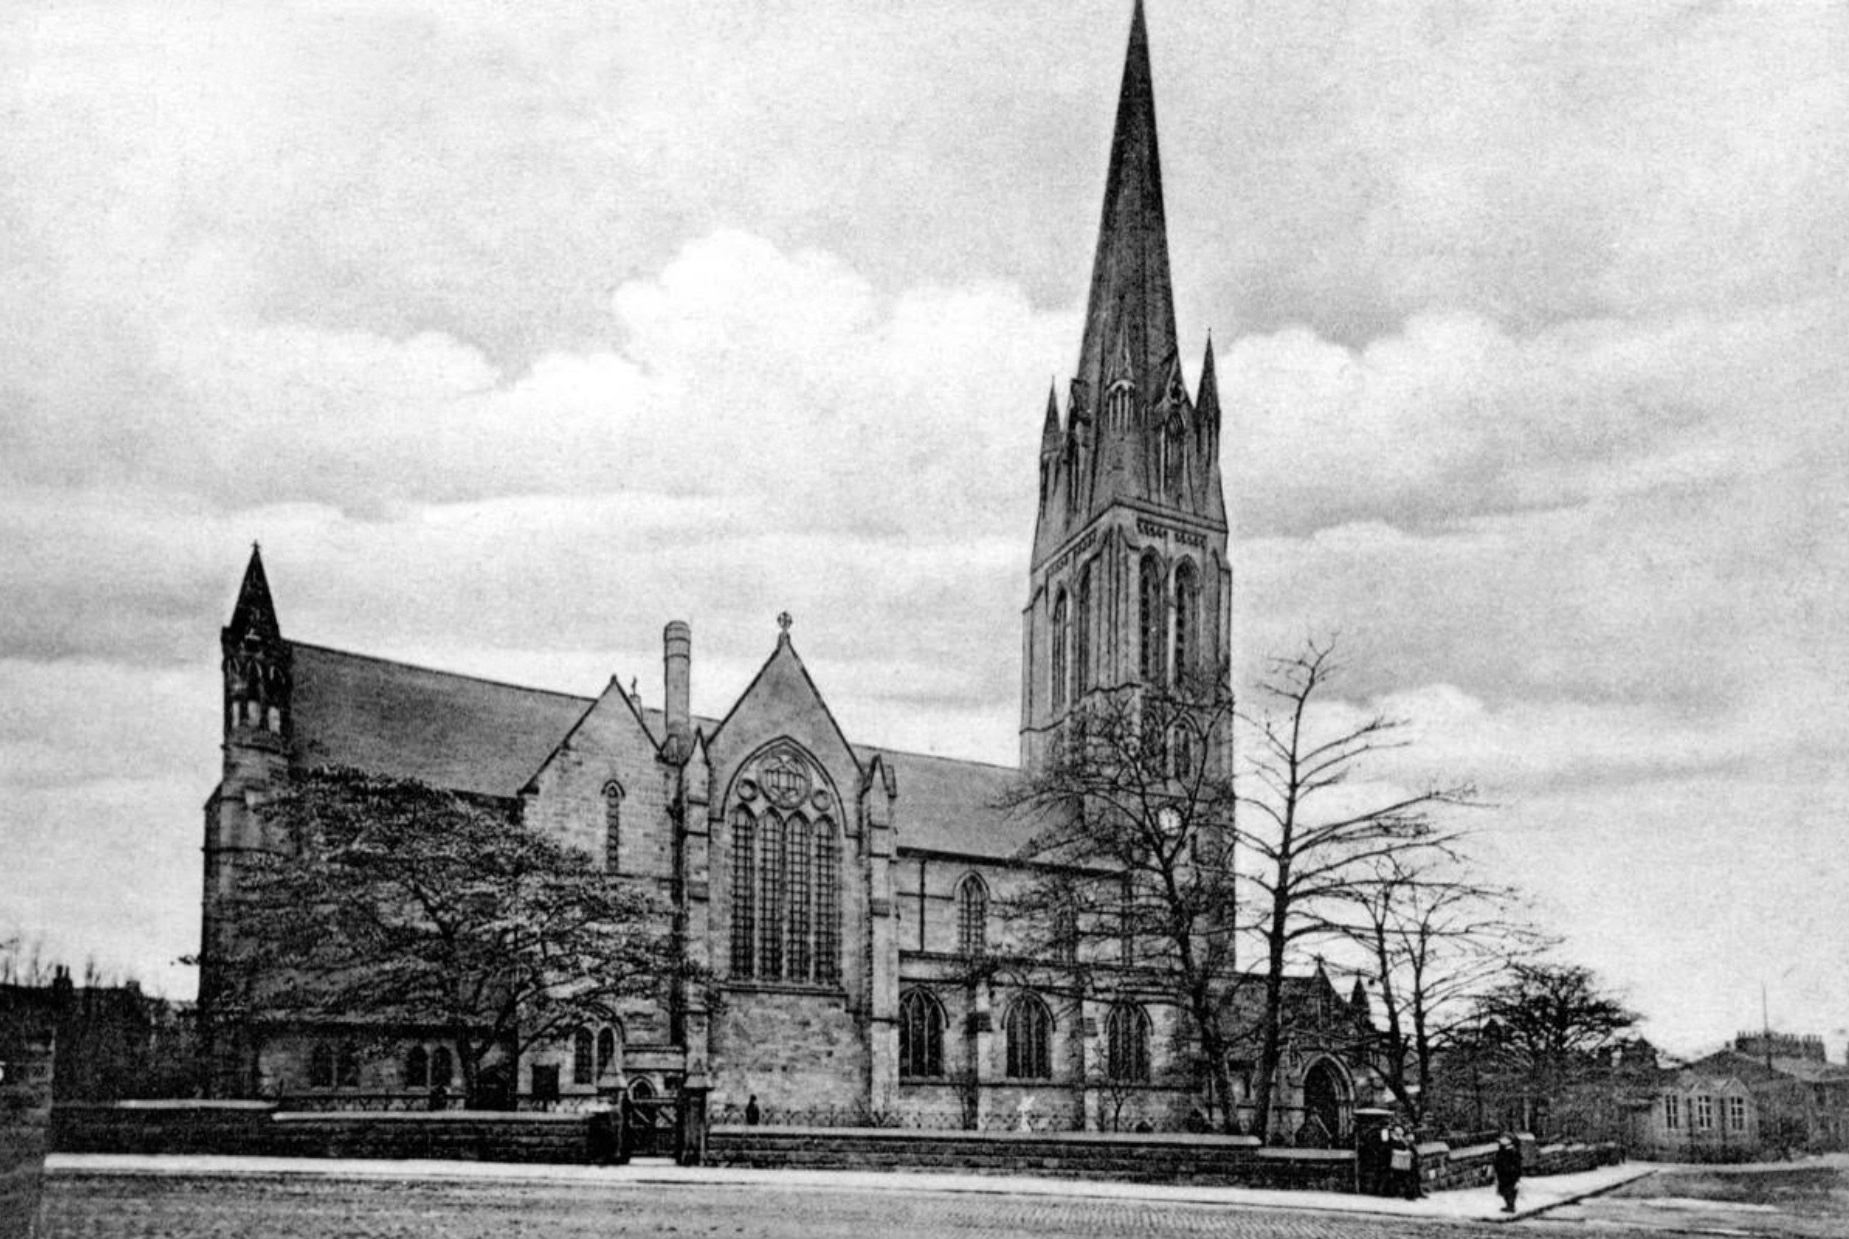  St Michael's Church, circa 1894